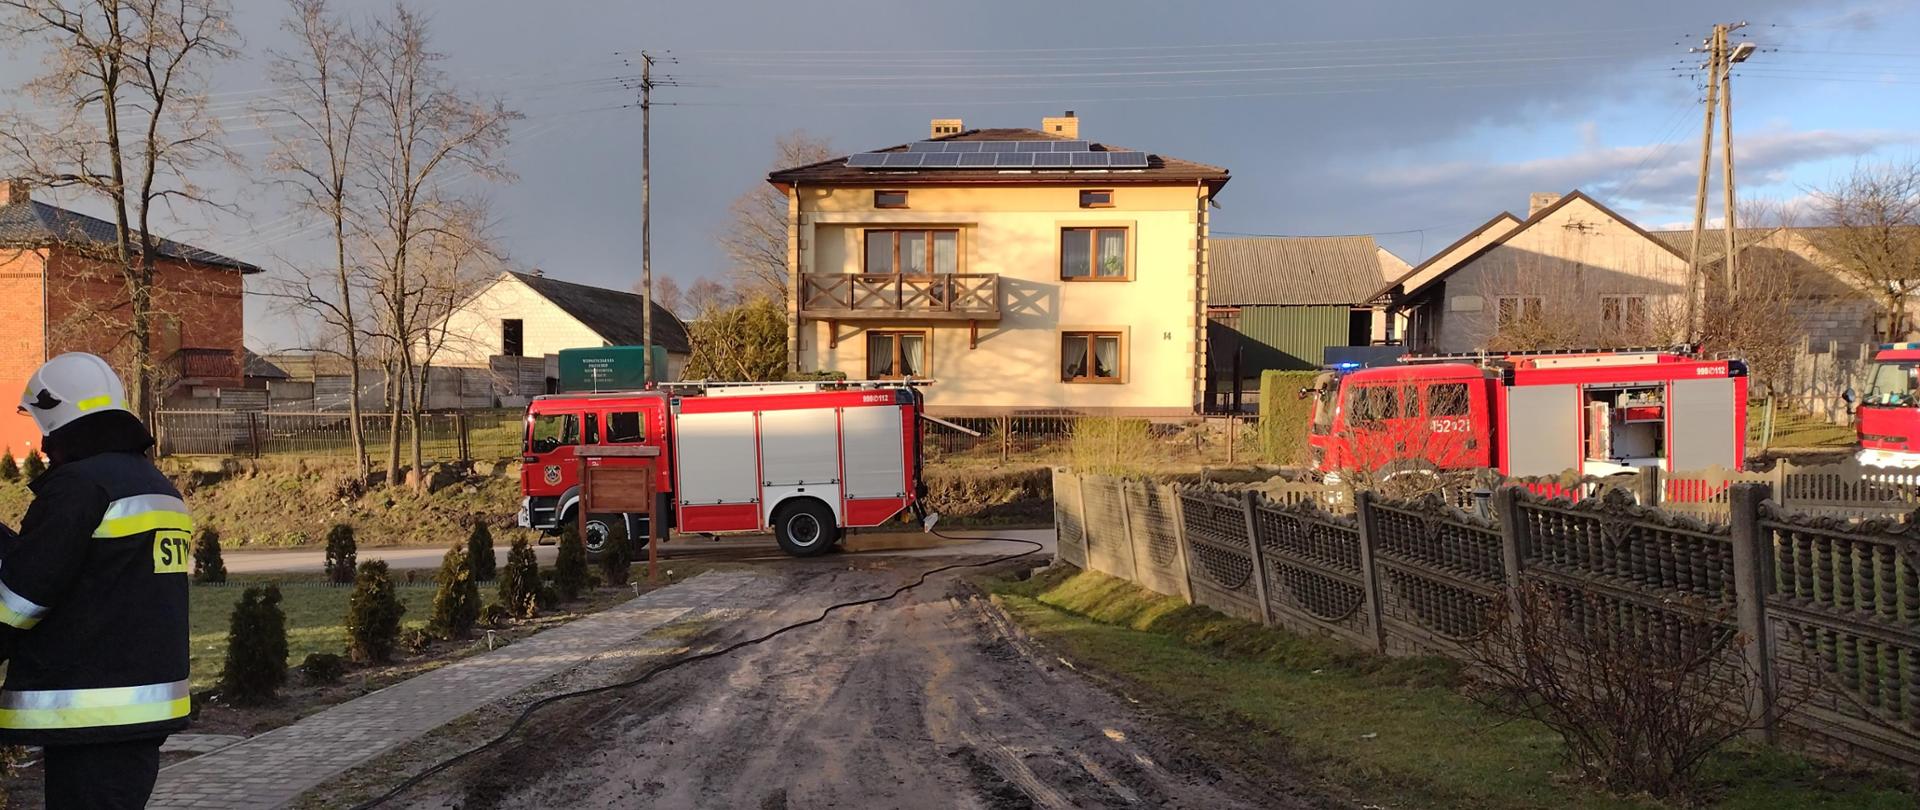 Na zdjęciu widać strażaka stojącego na posesji prywatnej. Na drugim
planie stoją na jezdni przed posesją 3 samochody ratowniczo - gaśnicze.
Za nimi widać domy jednorodzinne.